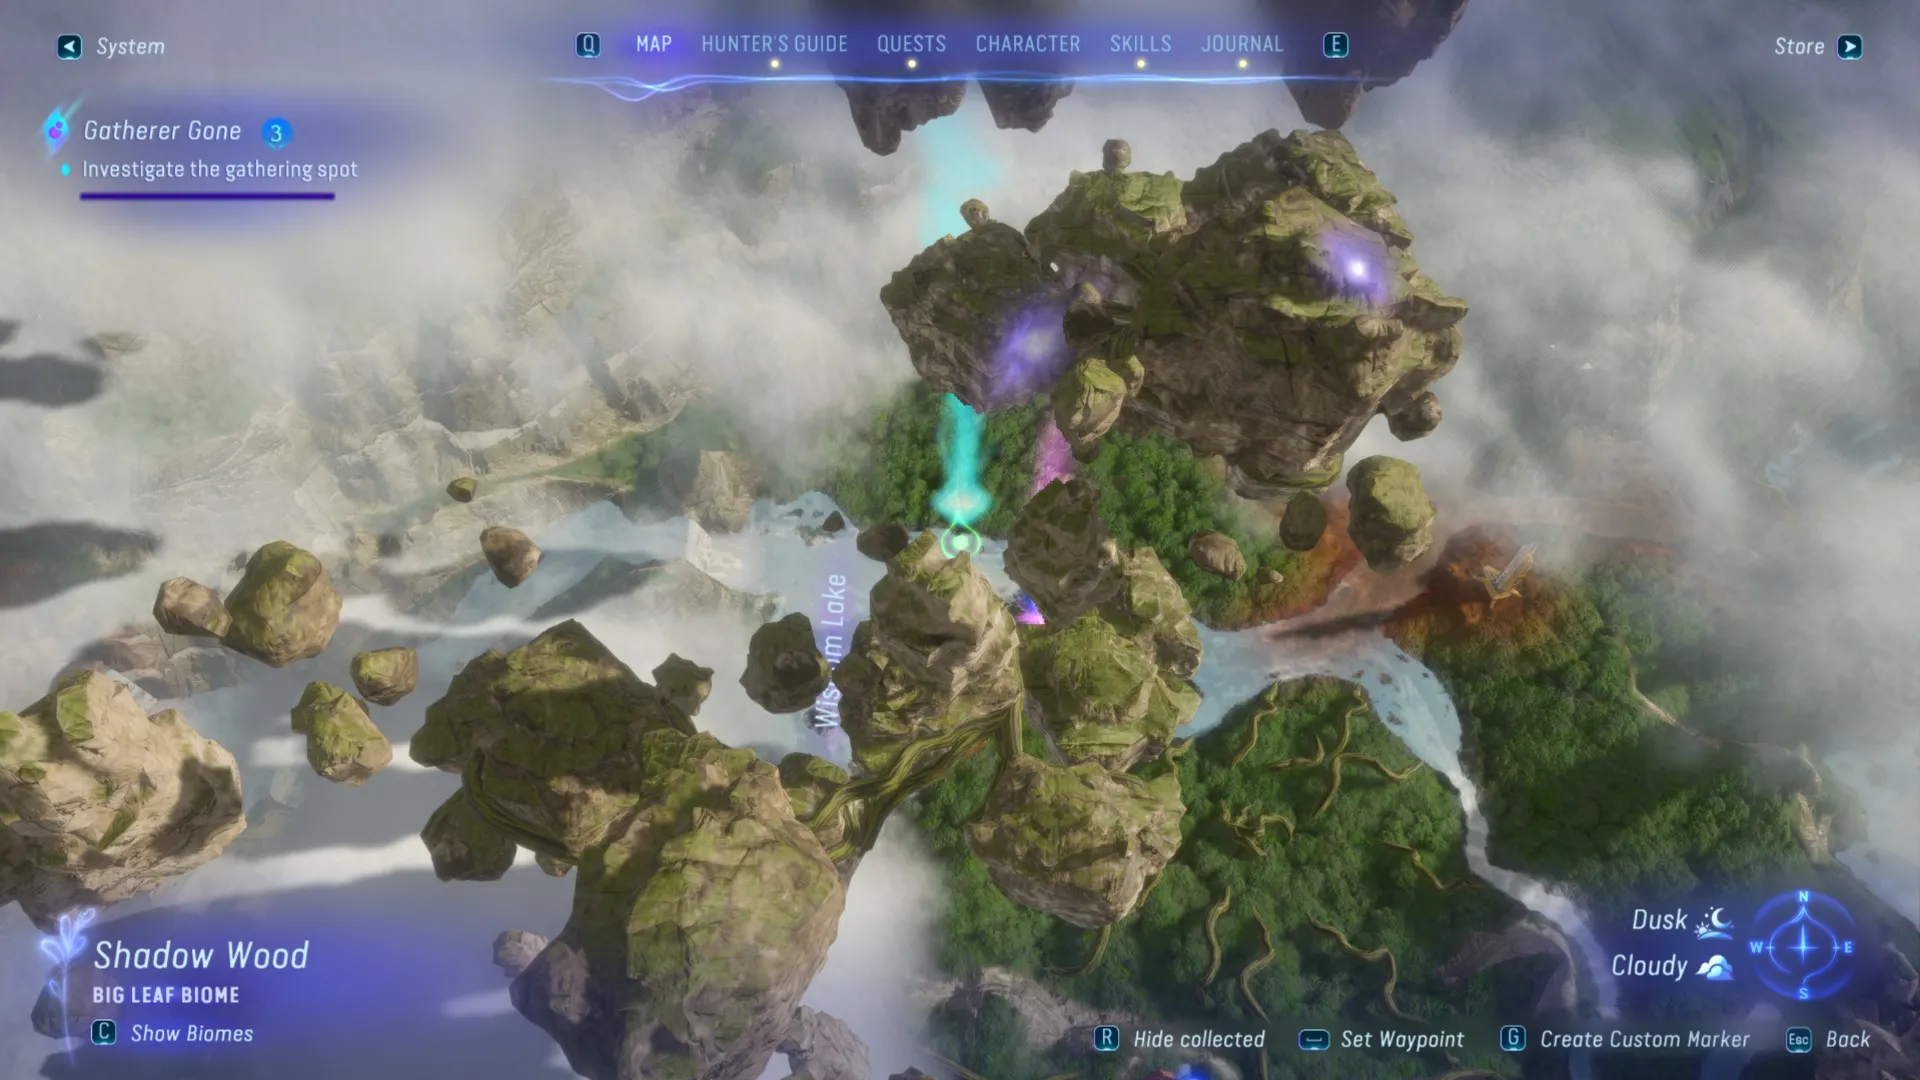 Местоположение Озера Мудрости на внутриигровой карте, показывающее, куда идти в квесте Пропавший Сборщик в игре Аватар: Пограничье Пандоры.